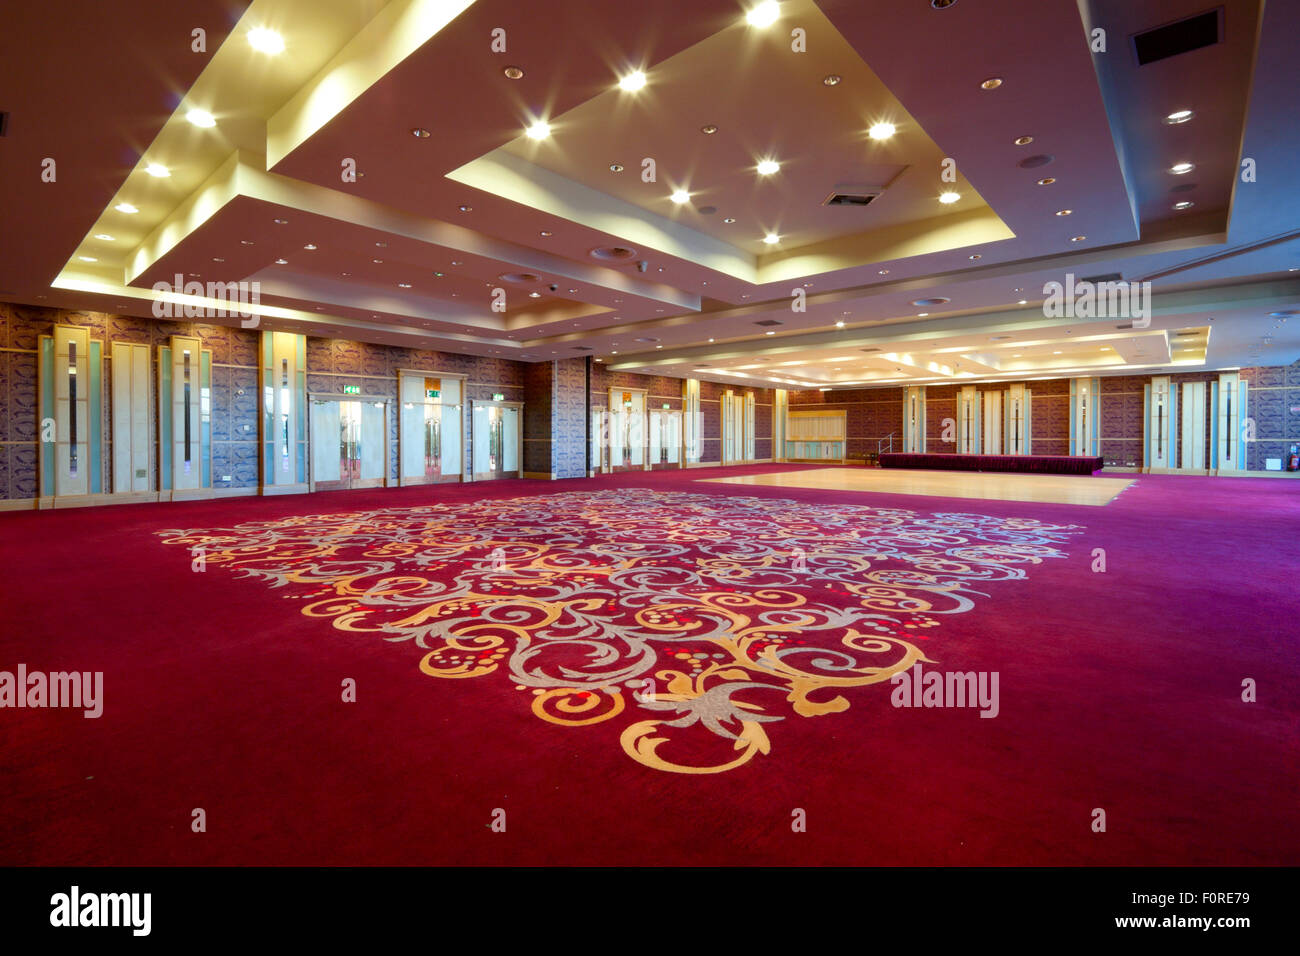 Riesige Halle Interieur mit rotem Teppich und Seiling mit Lichtern im Hotel Stockfoto